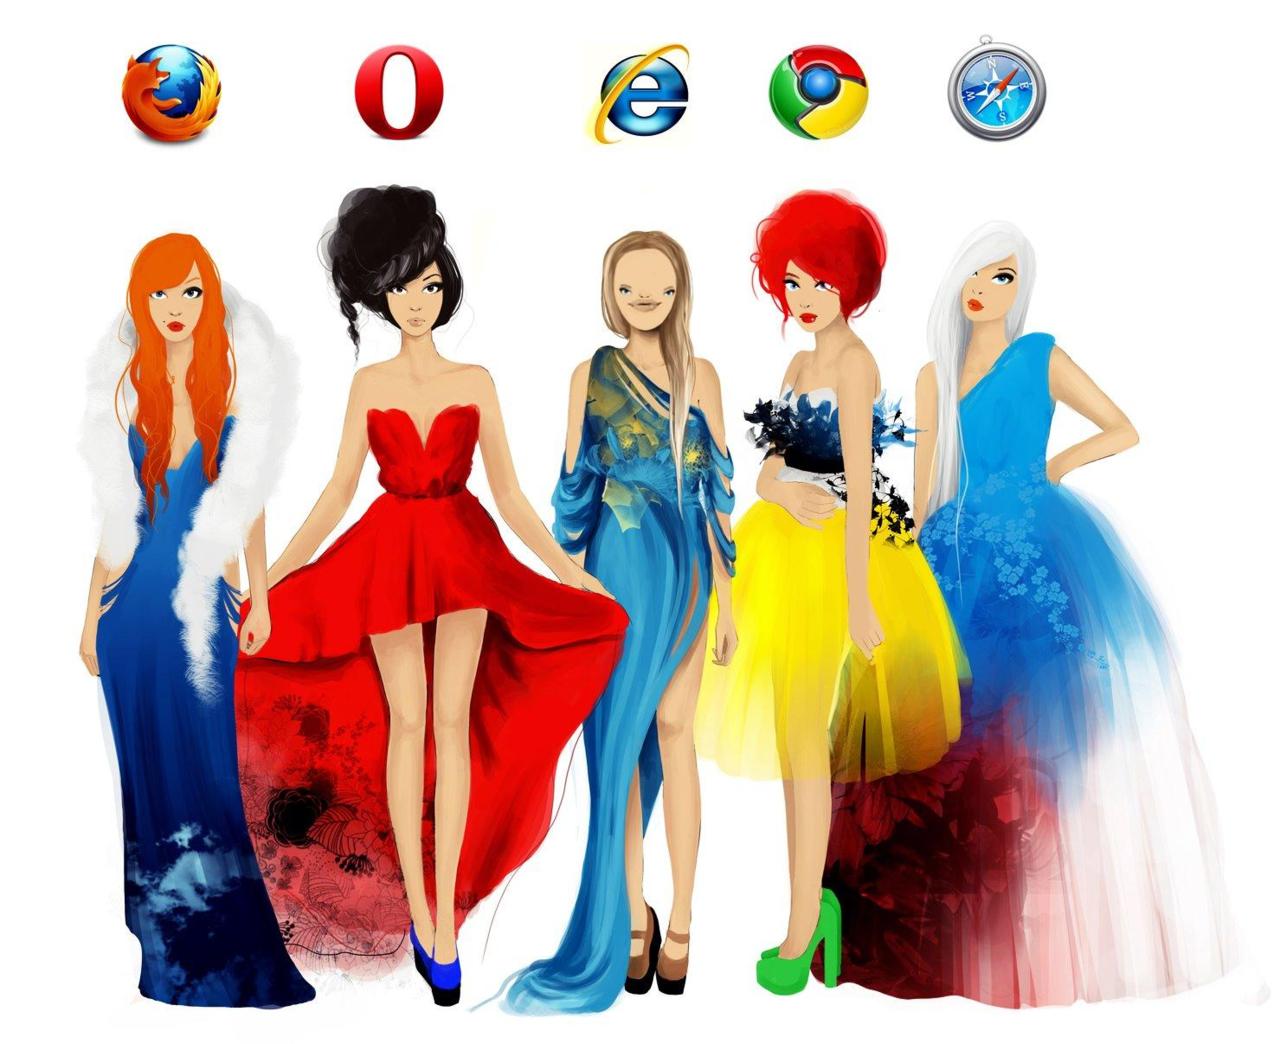 Obrázek browsers.like.women